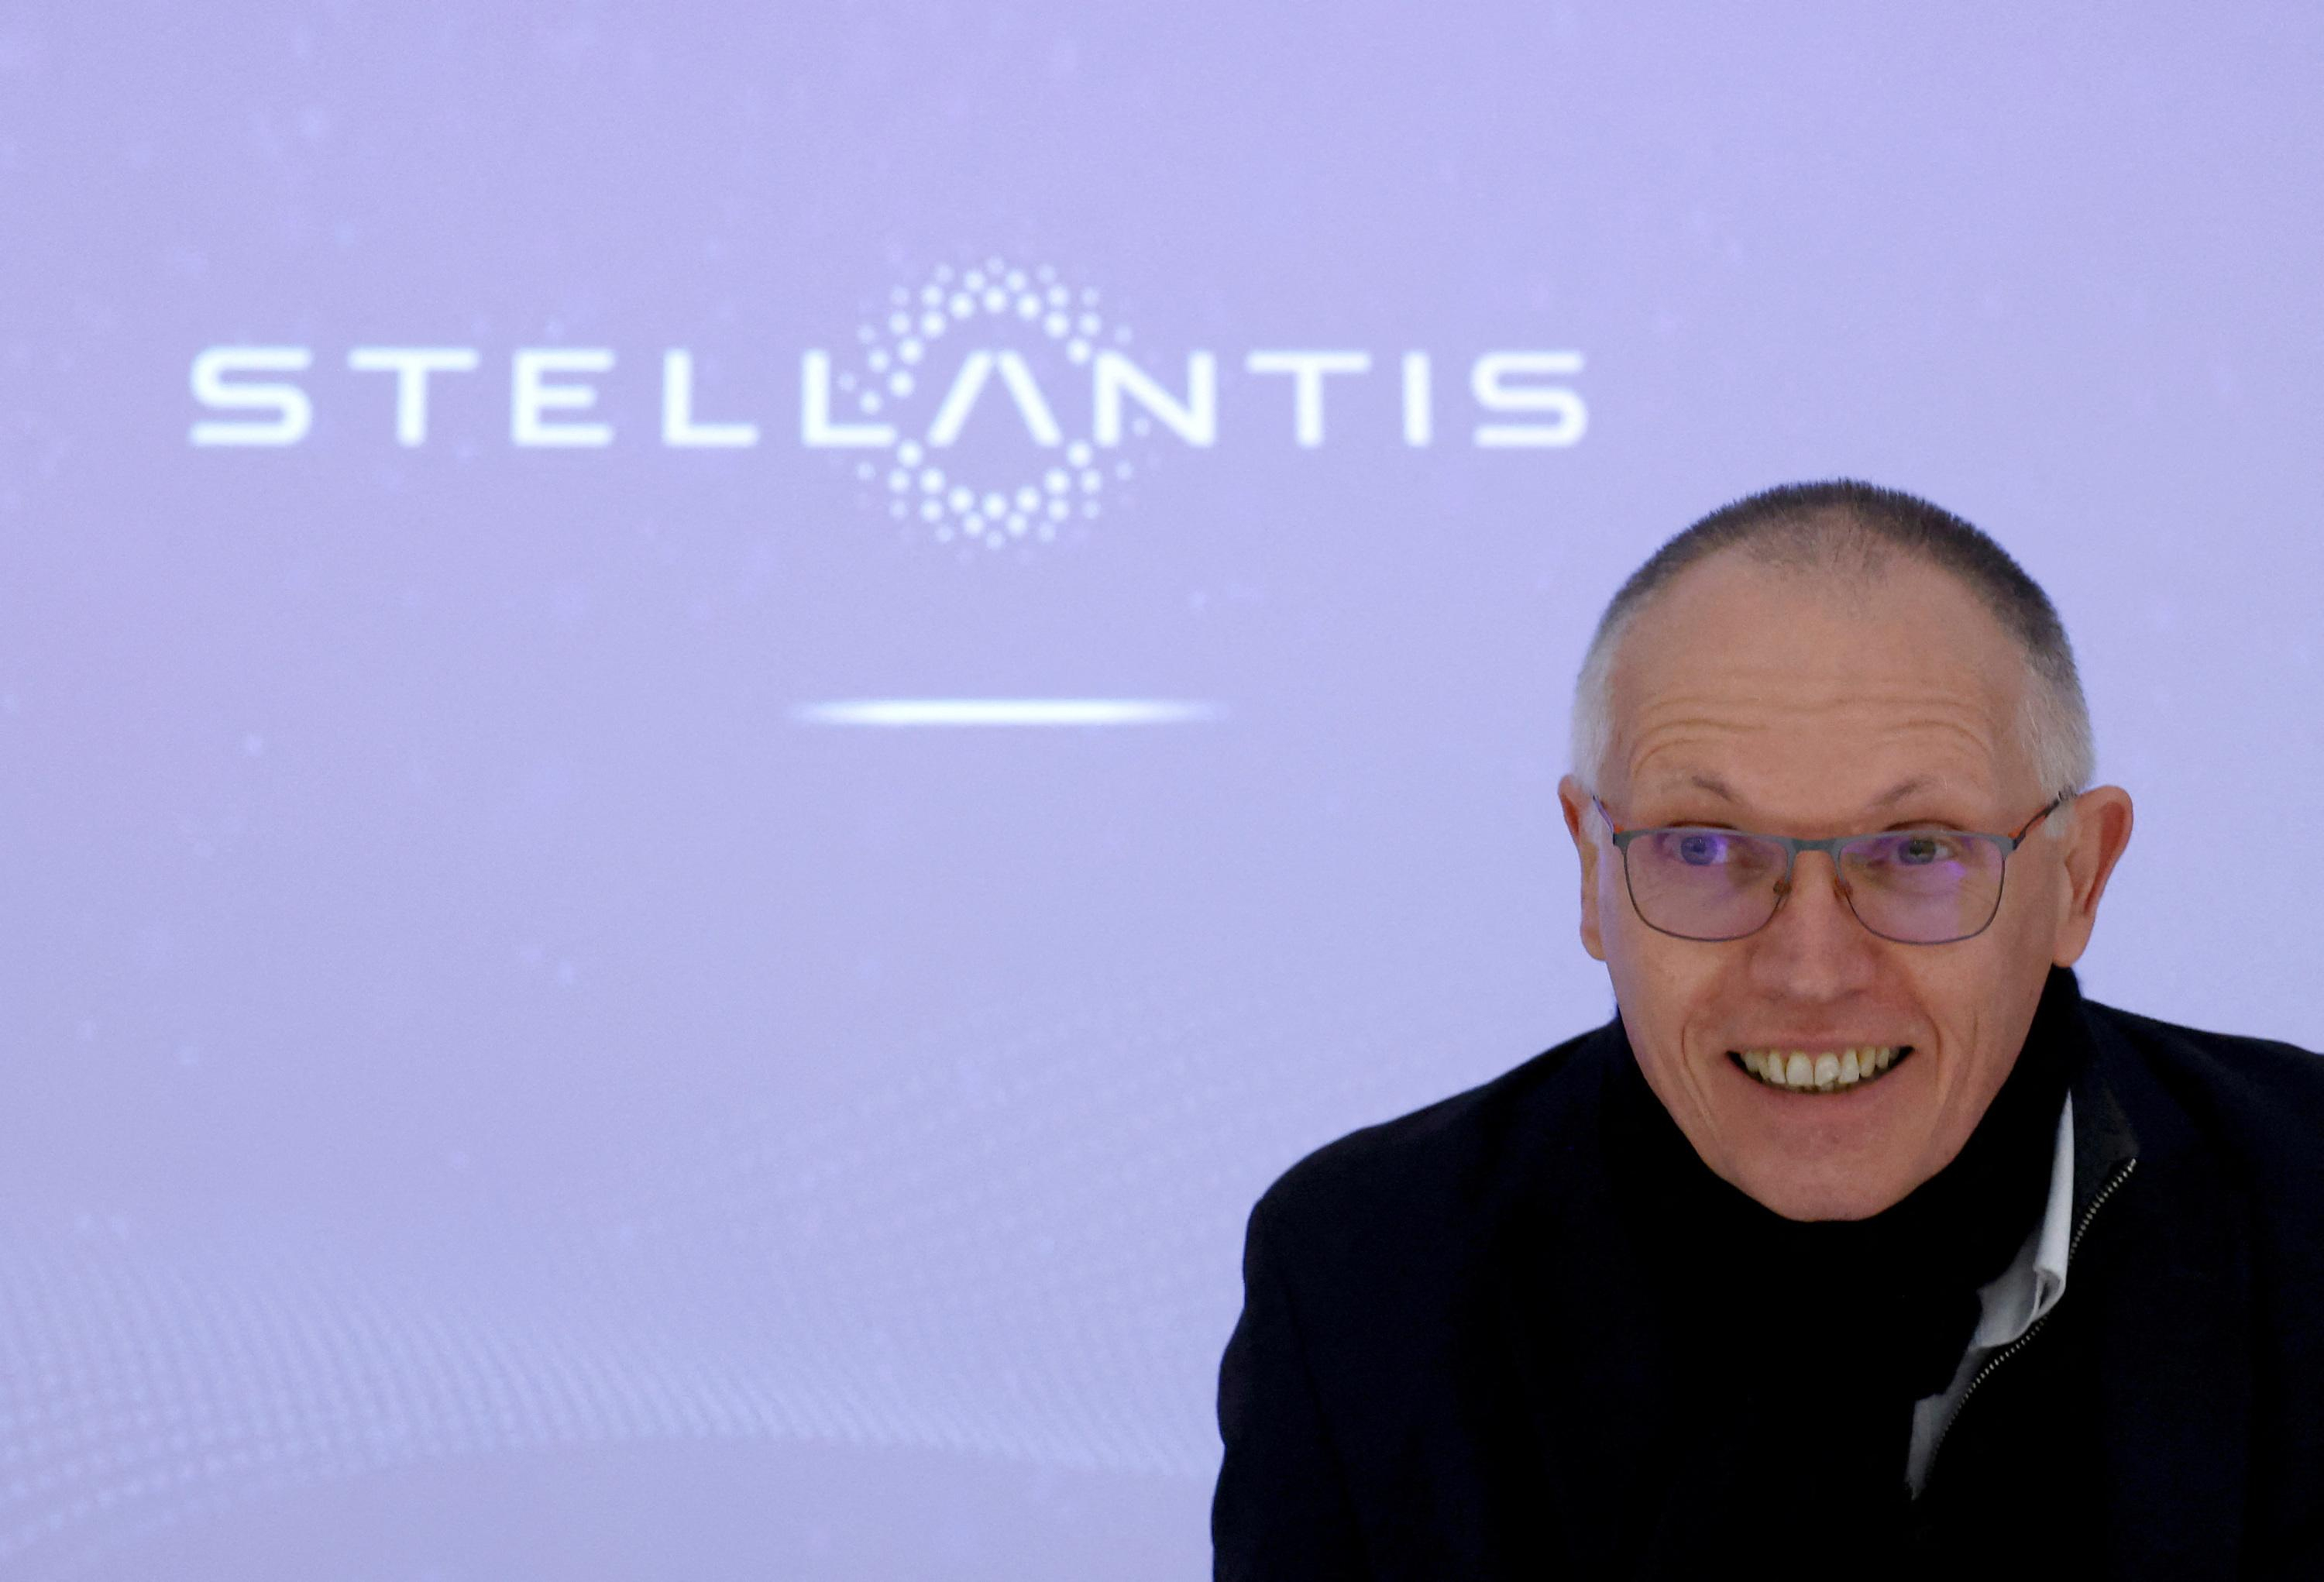 Stellantis retains its title as double-digit margin champion